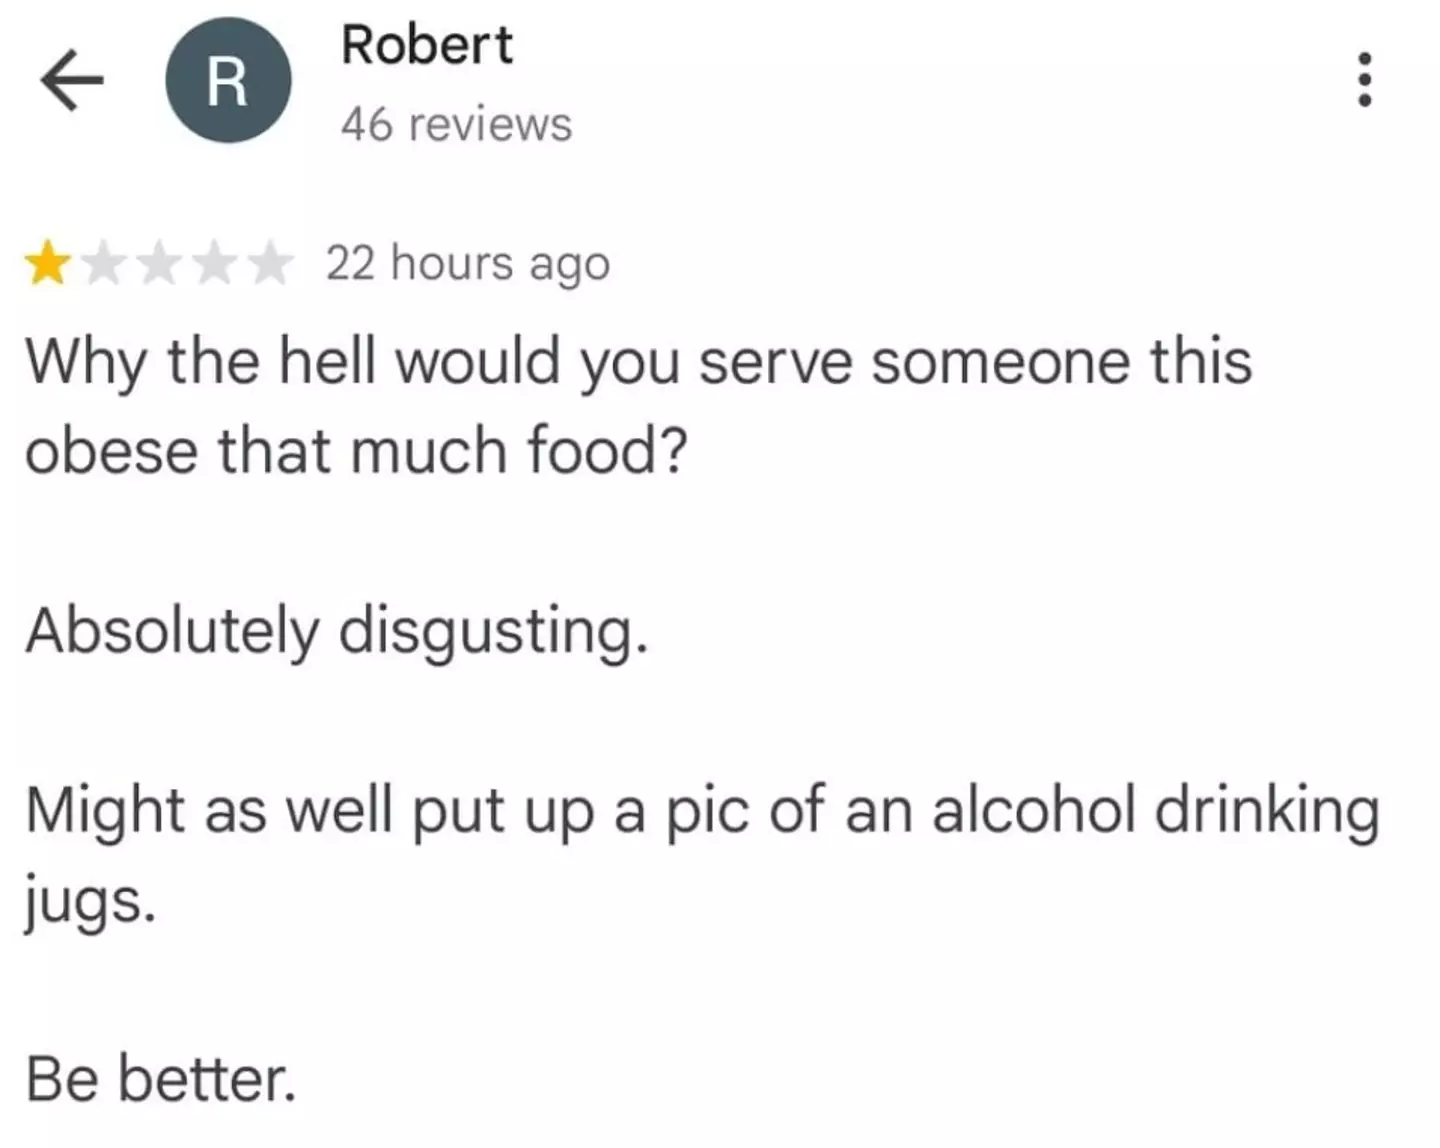 Robert slammed the restaurant in the review.